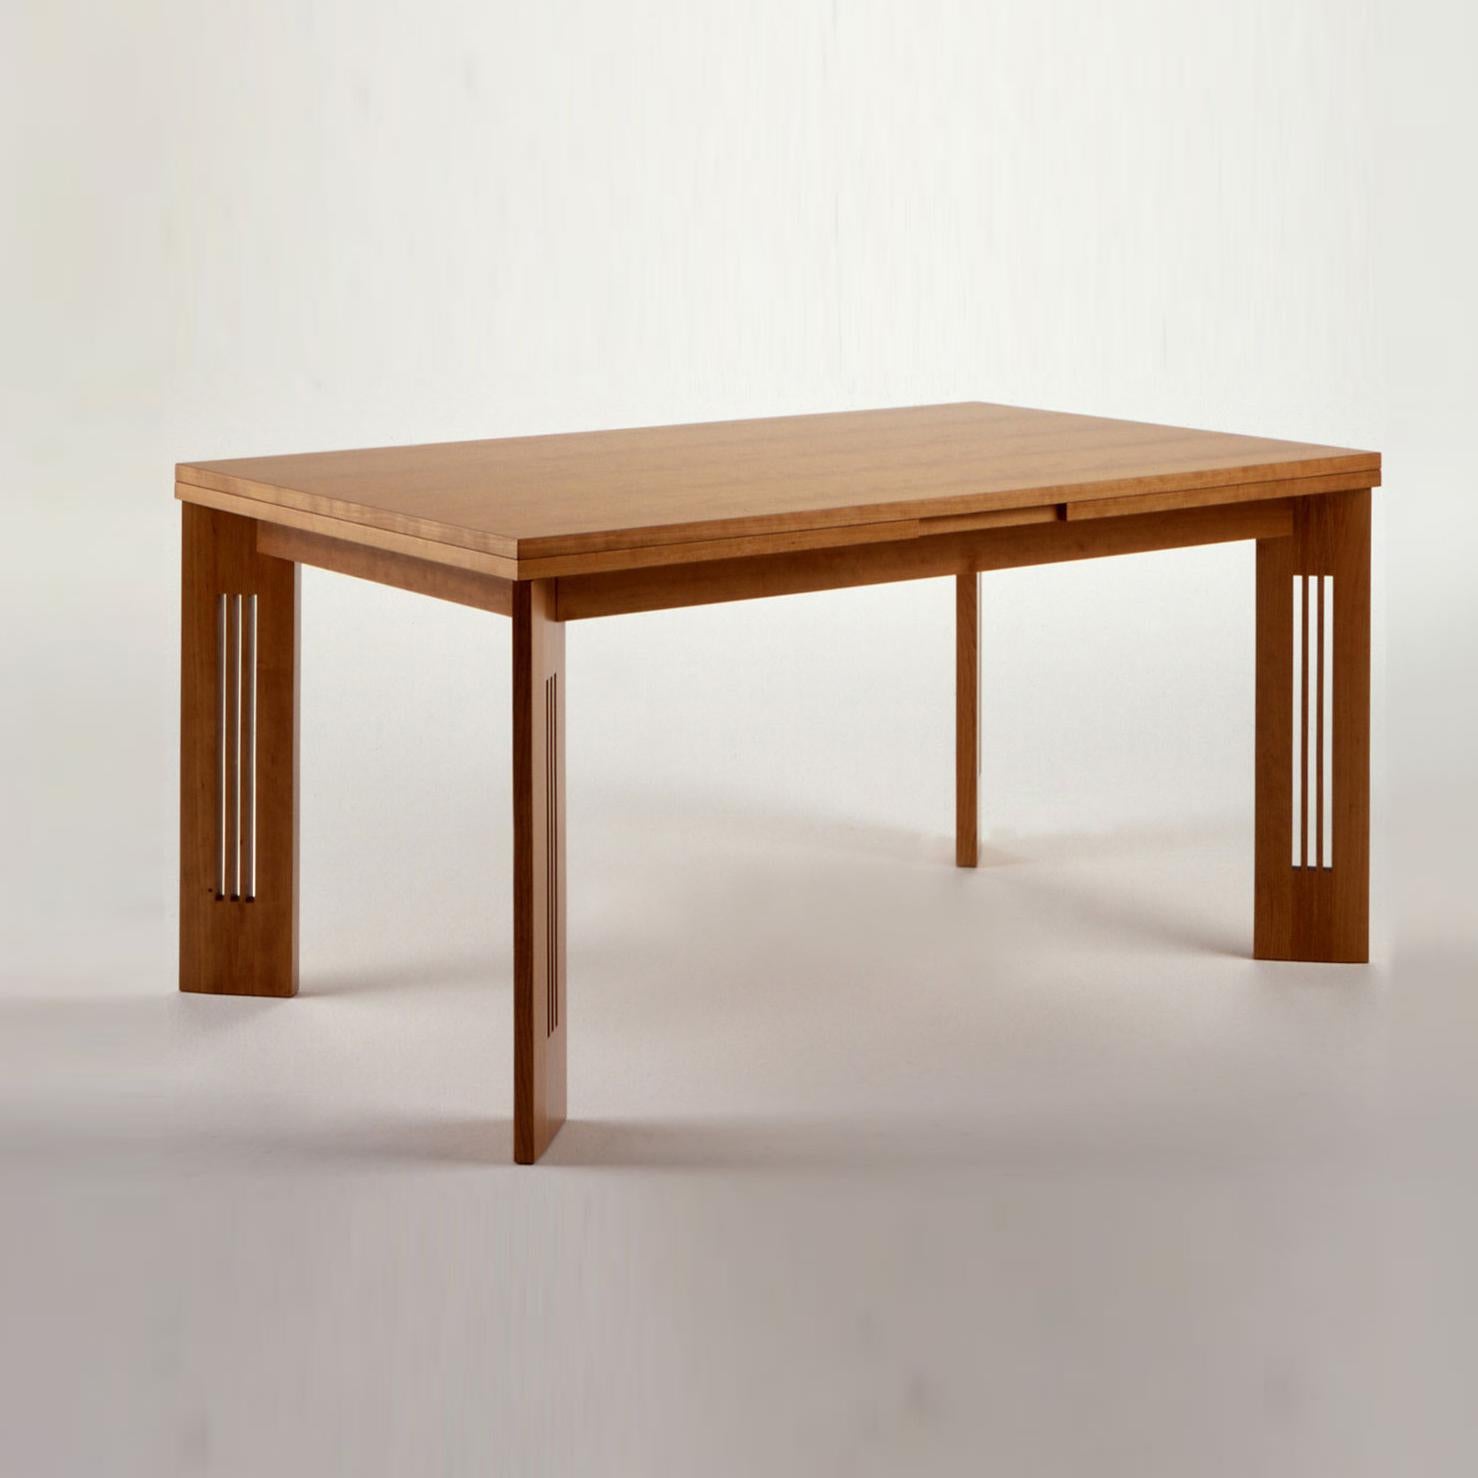 Table à rallonge conçue par Charles Rennie Mackintosh en 1905. Relancé en 1996.
Fabriqué par Cassina en Italie.

Une table à rallonge qui illustre l'équilibre parfait entre le classique et le contemporain, conçue par Charles Rennie Mackintosh en